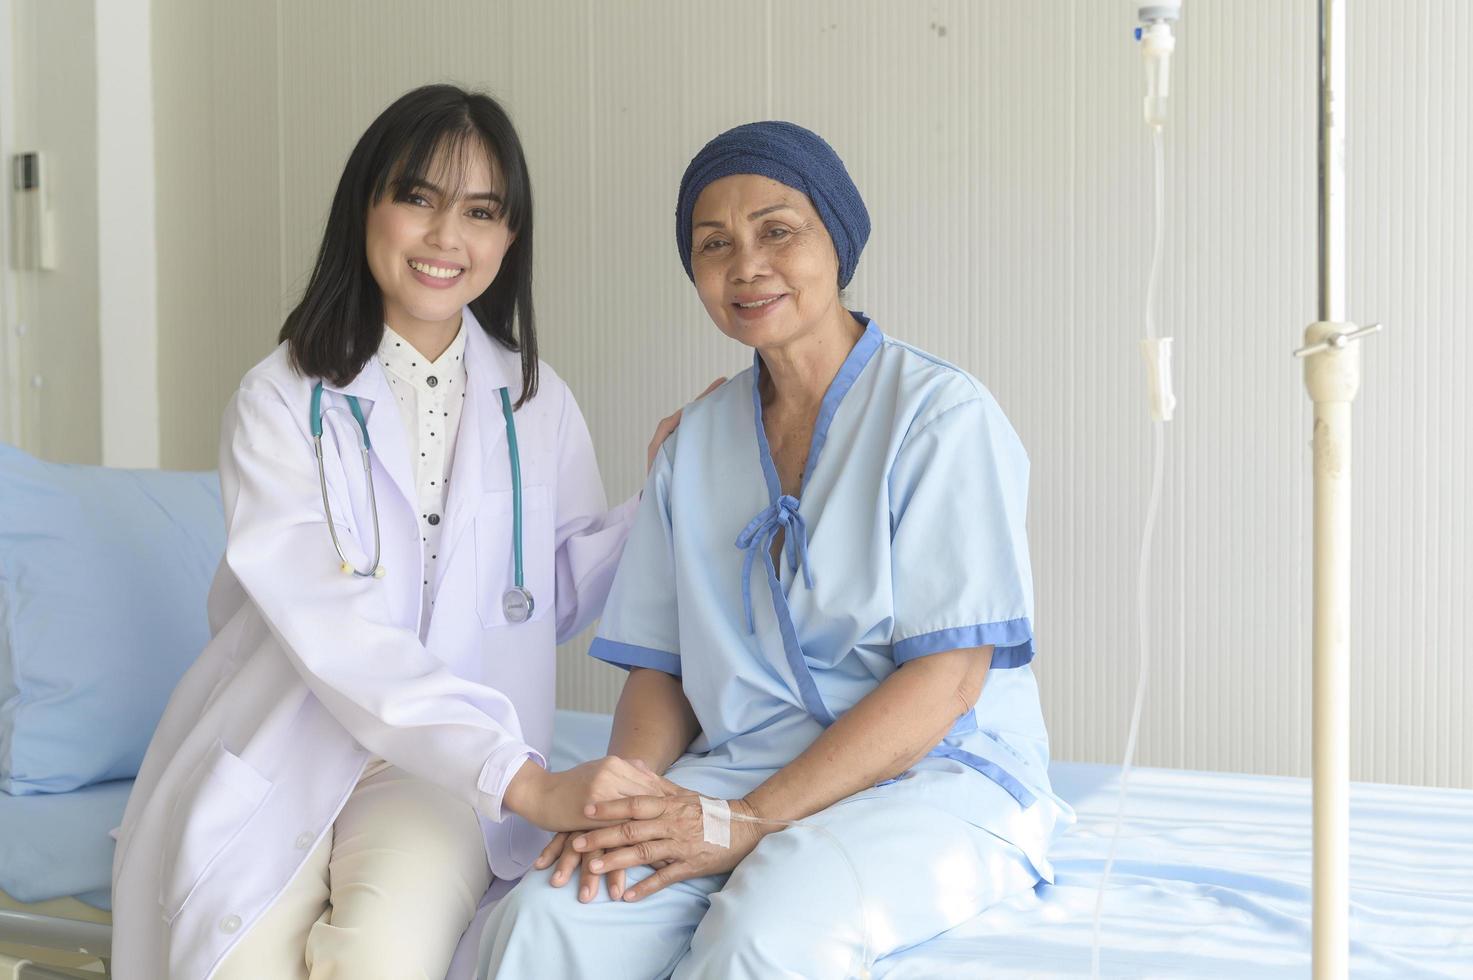 médico sosteniendo la mano de un paciente con cáncer en el hospital, atención médica y concepto médico foto